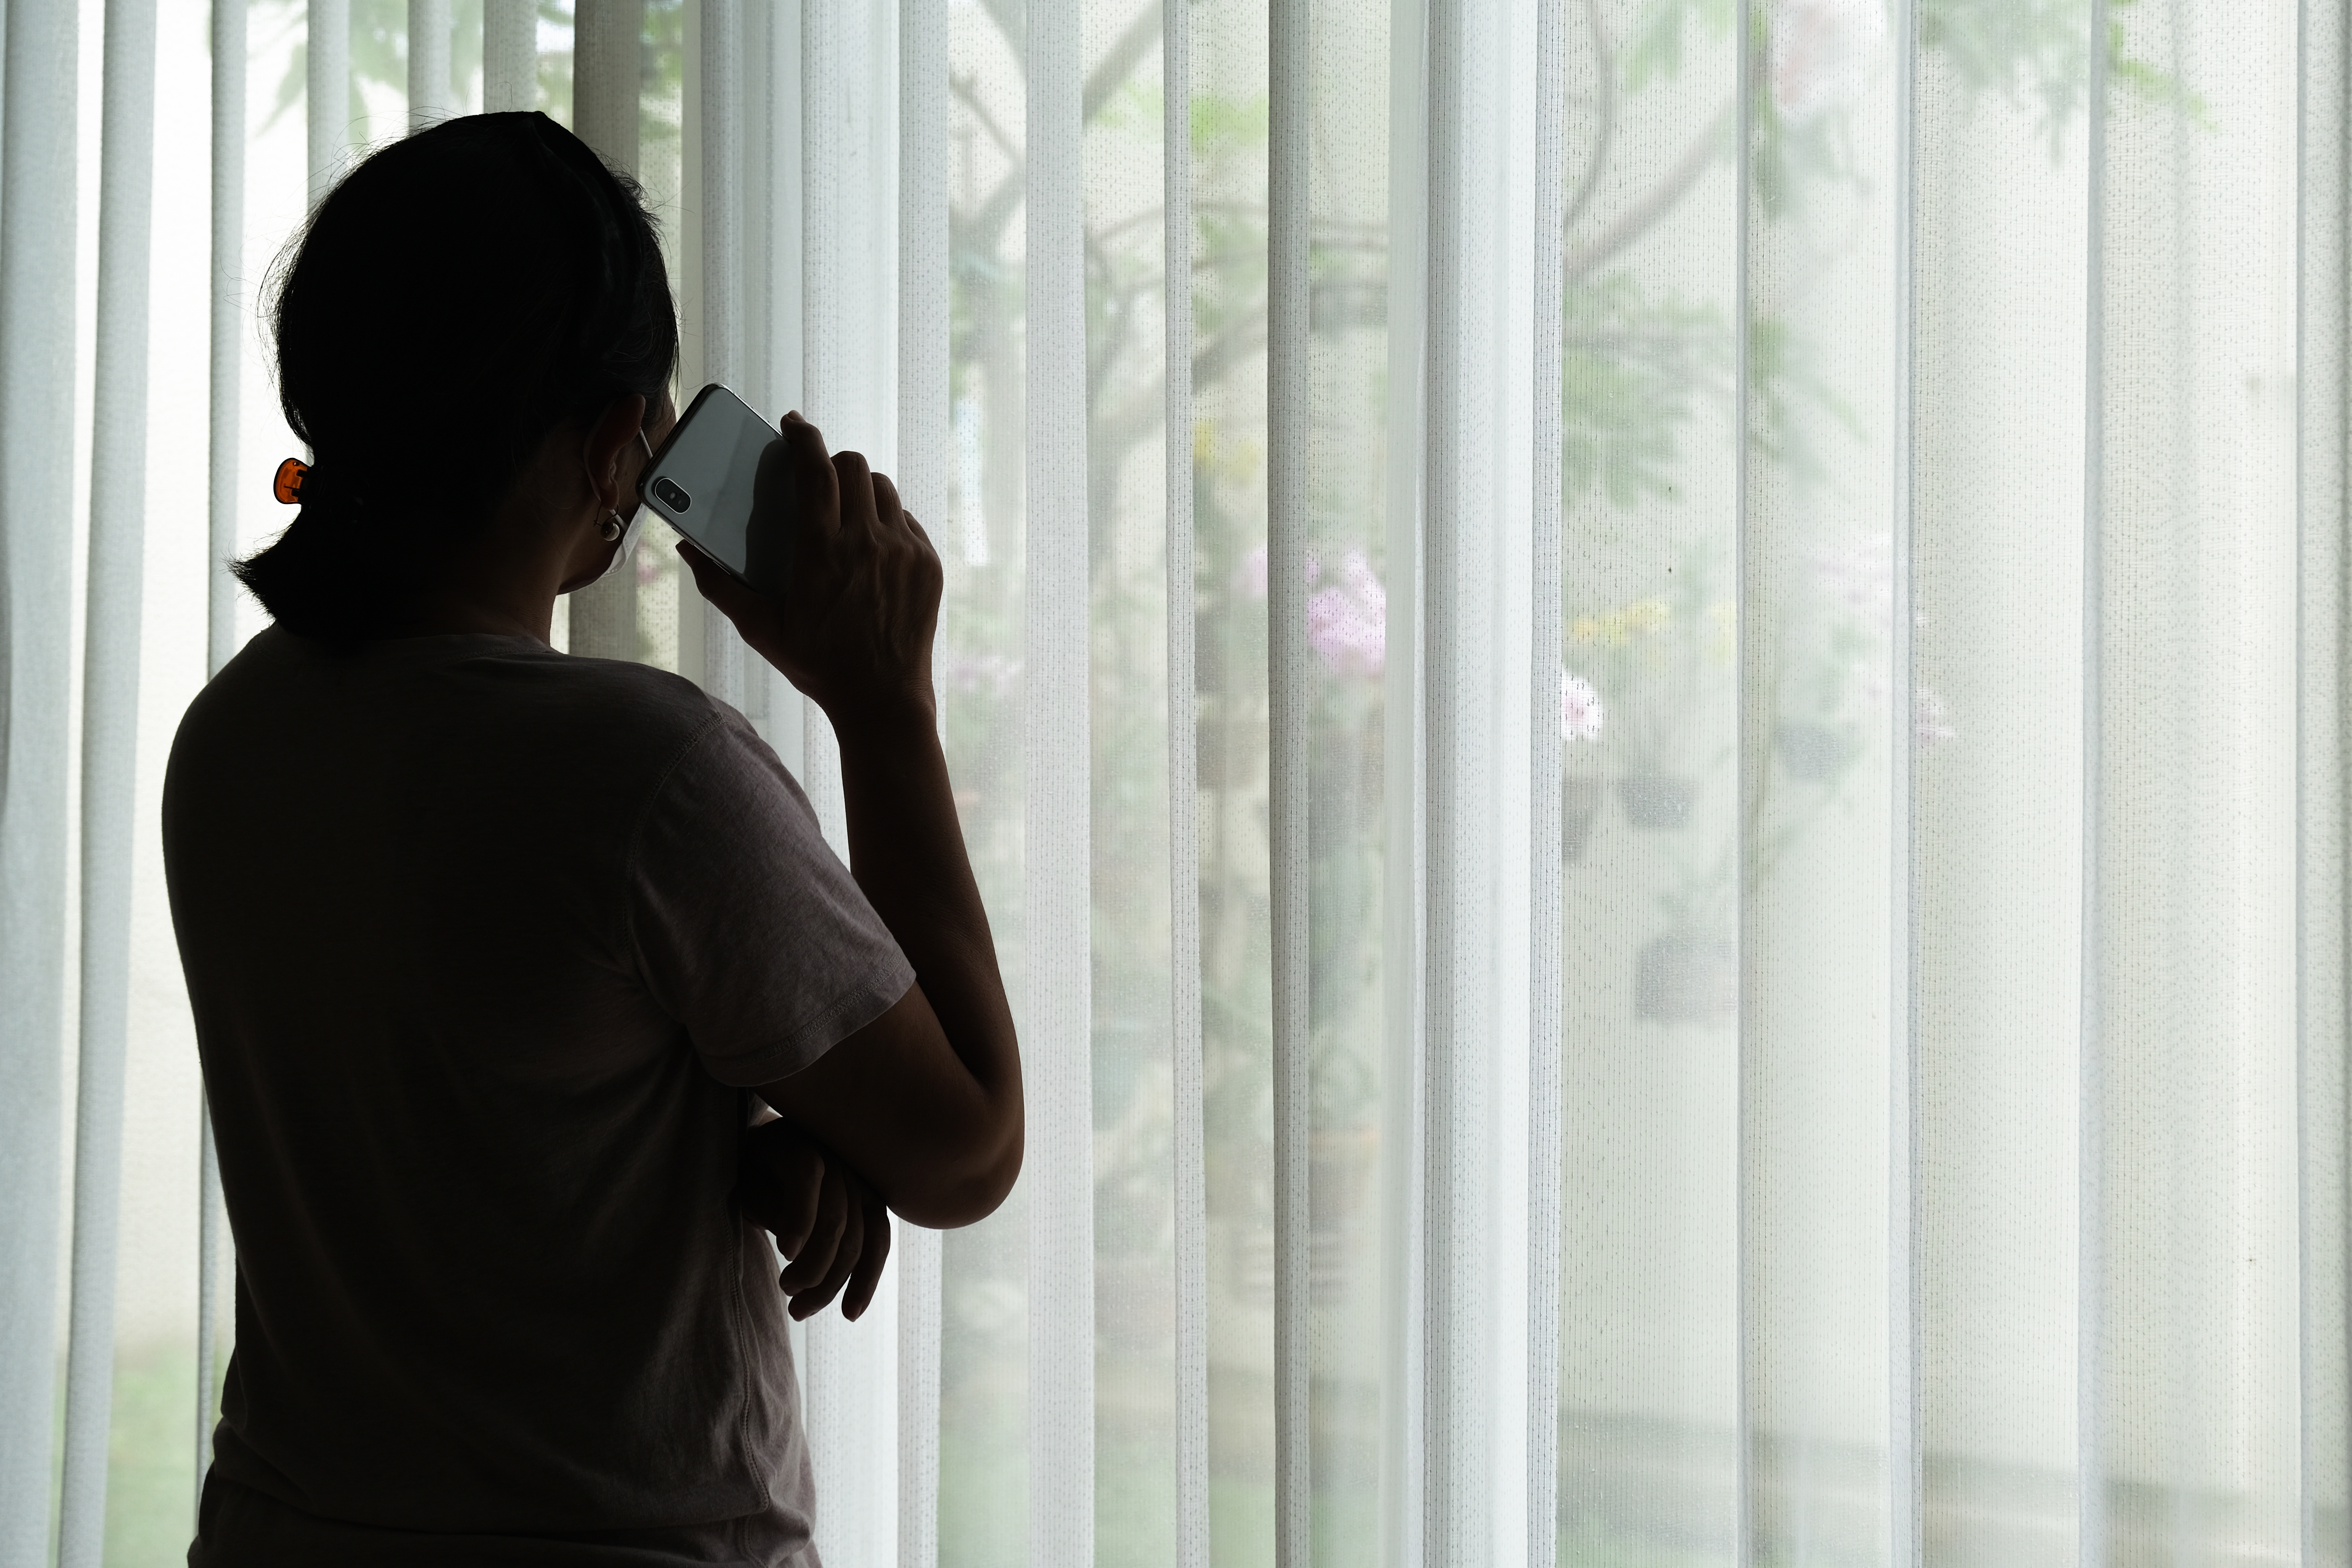 A woman attending a call | Source: Shutterstock